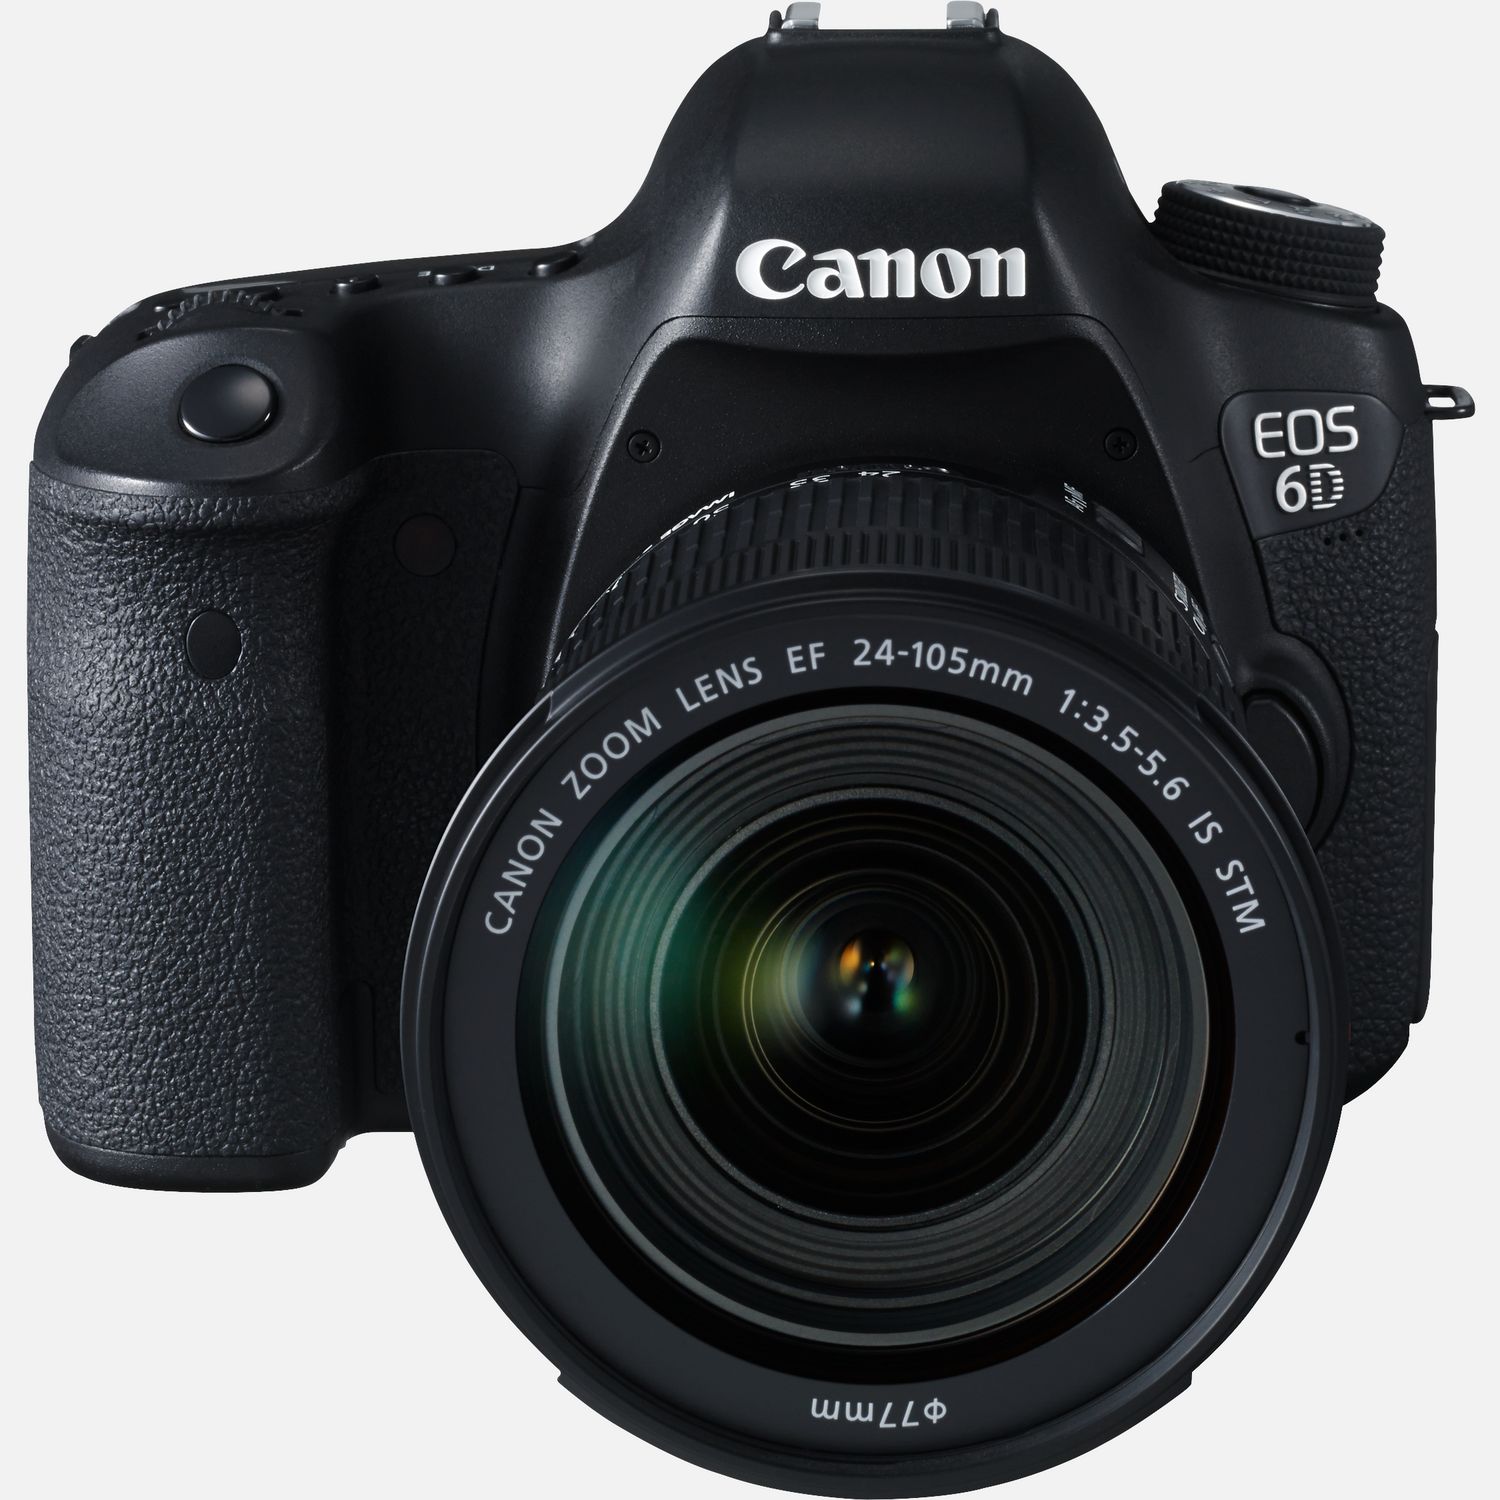  Canon Flash Speedlite 430EX para cámaras réflex Canon EOS -  Versión anterior : Electrónica